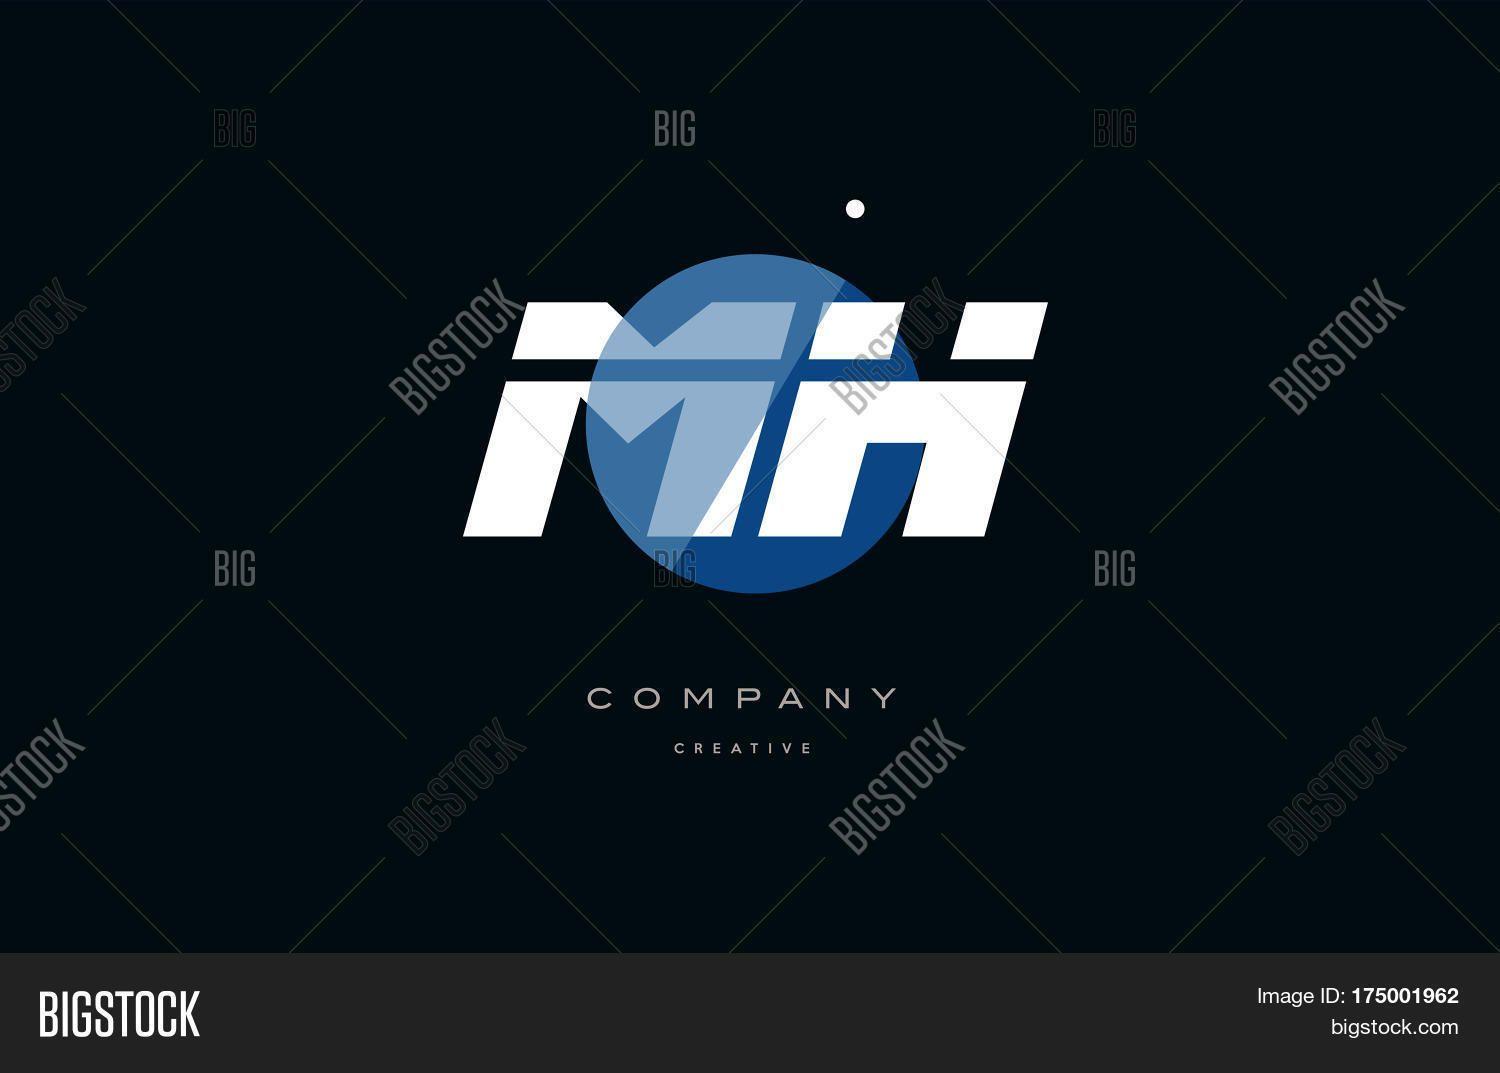 Blue Ball with Company Logo - 